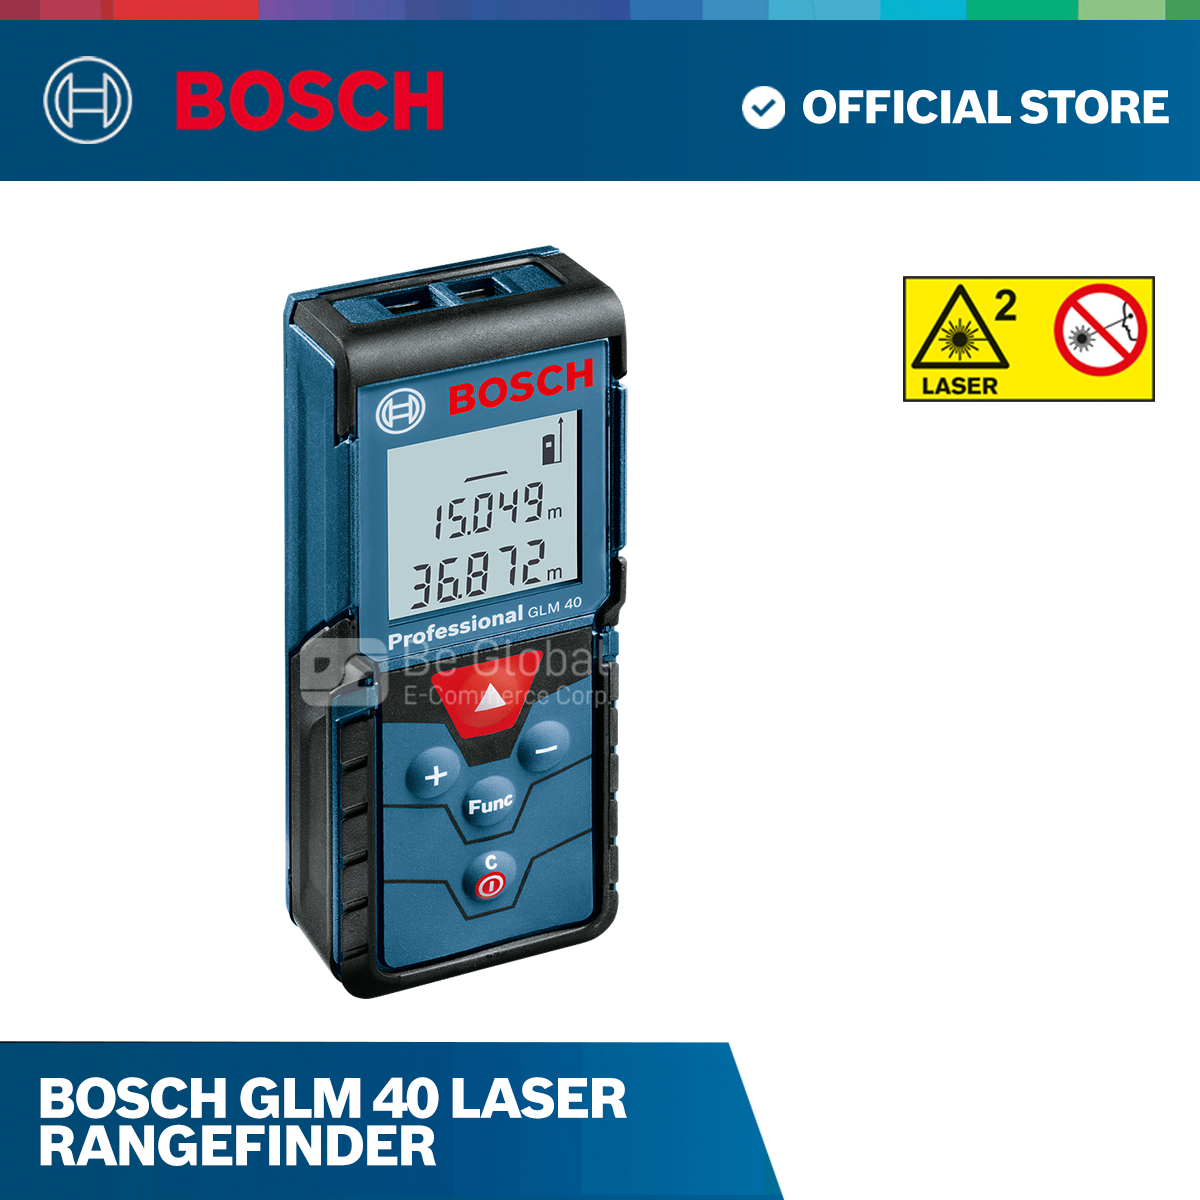 Bosch GLM 40 Laser Rangefinder